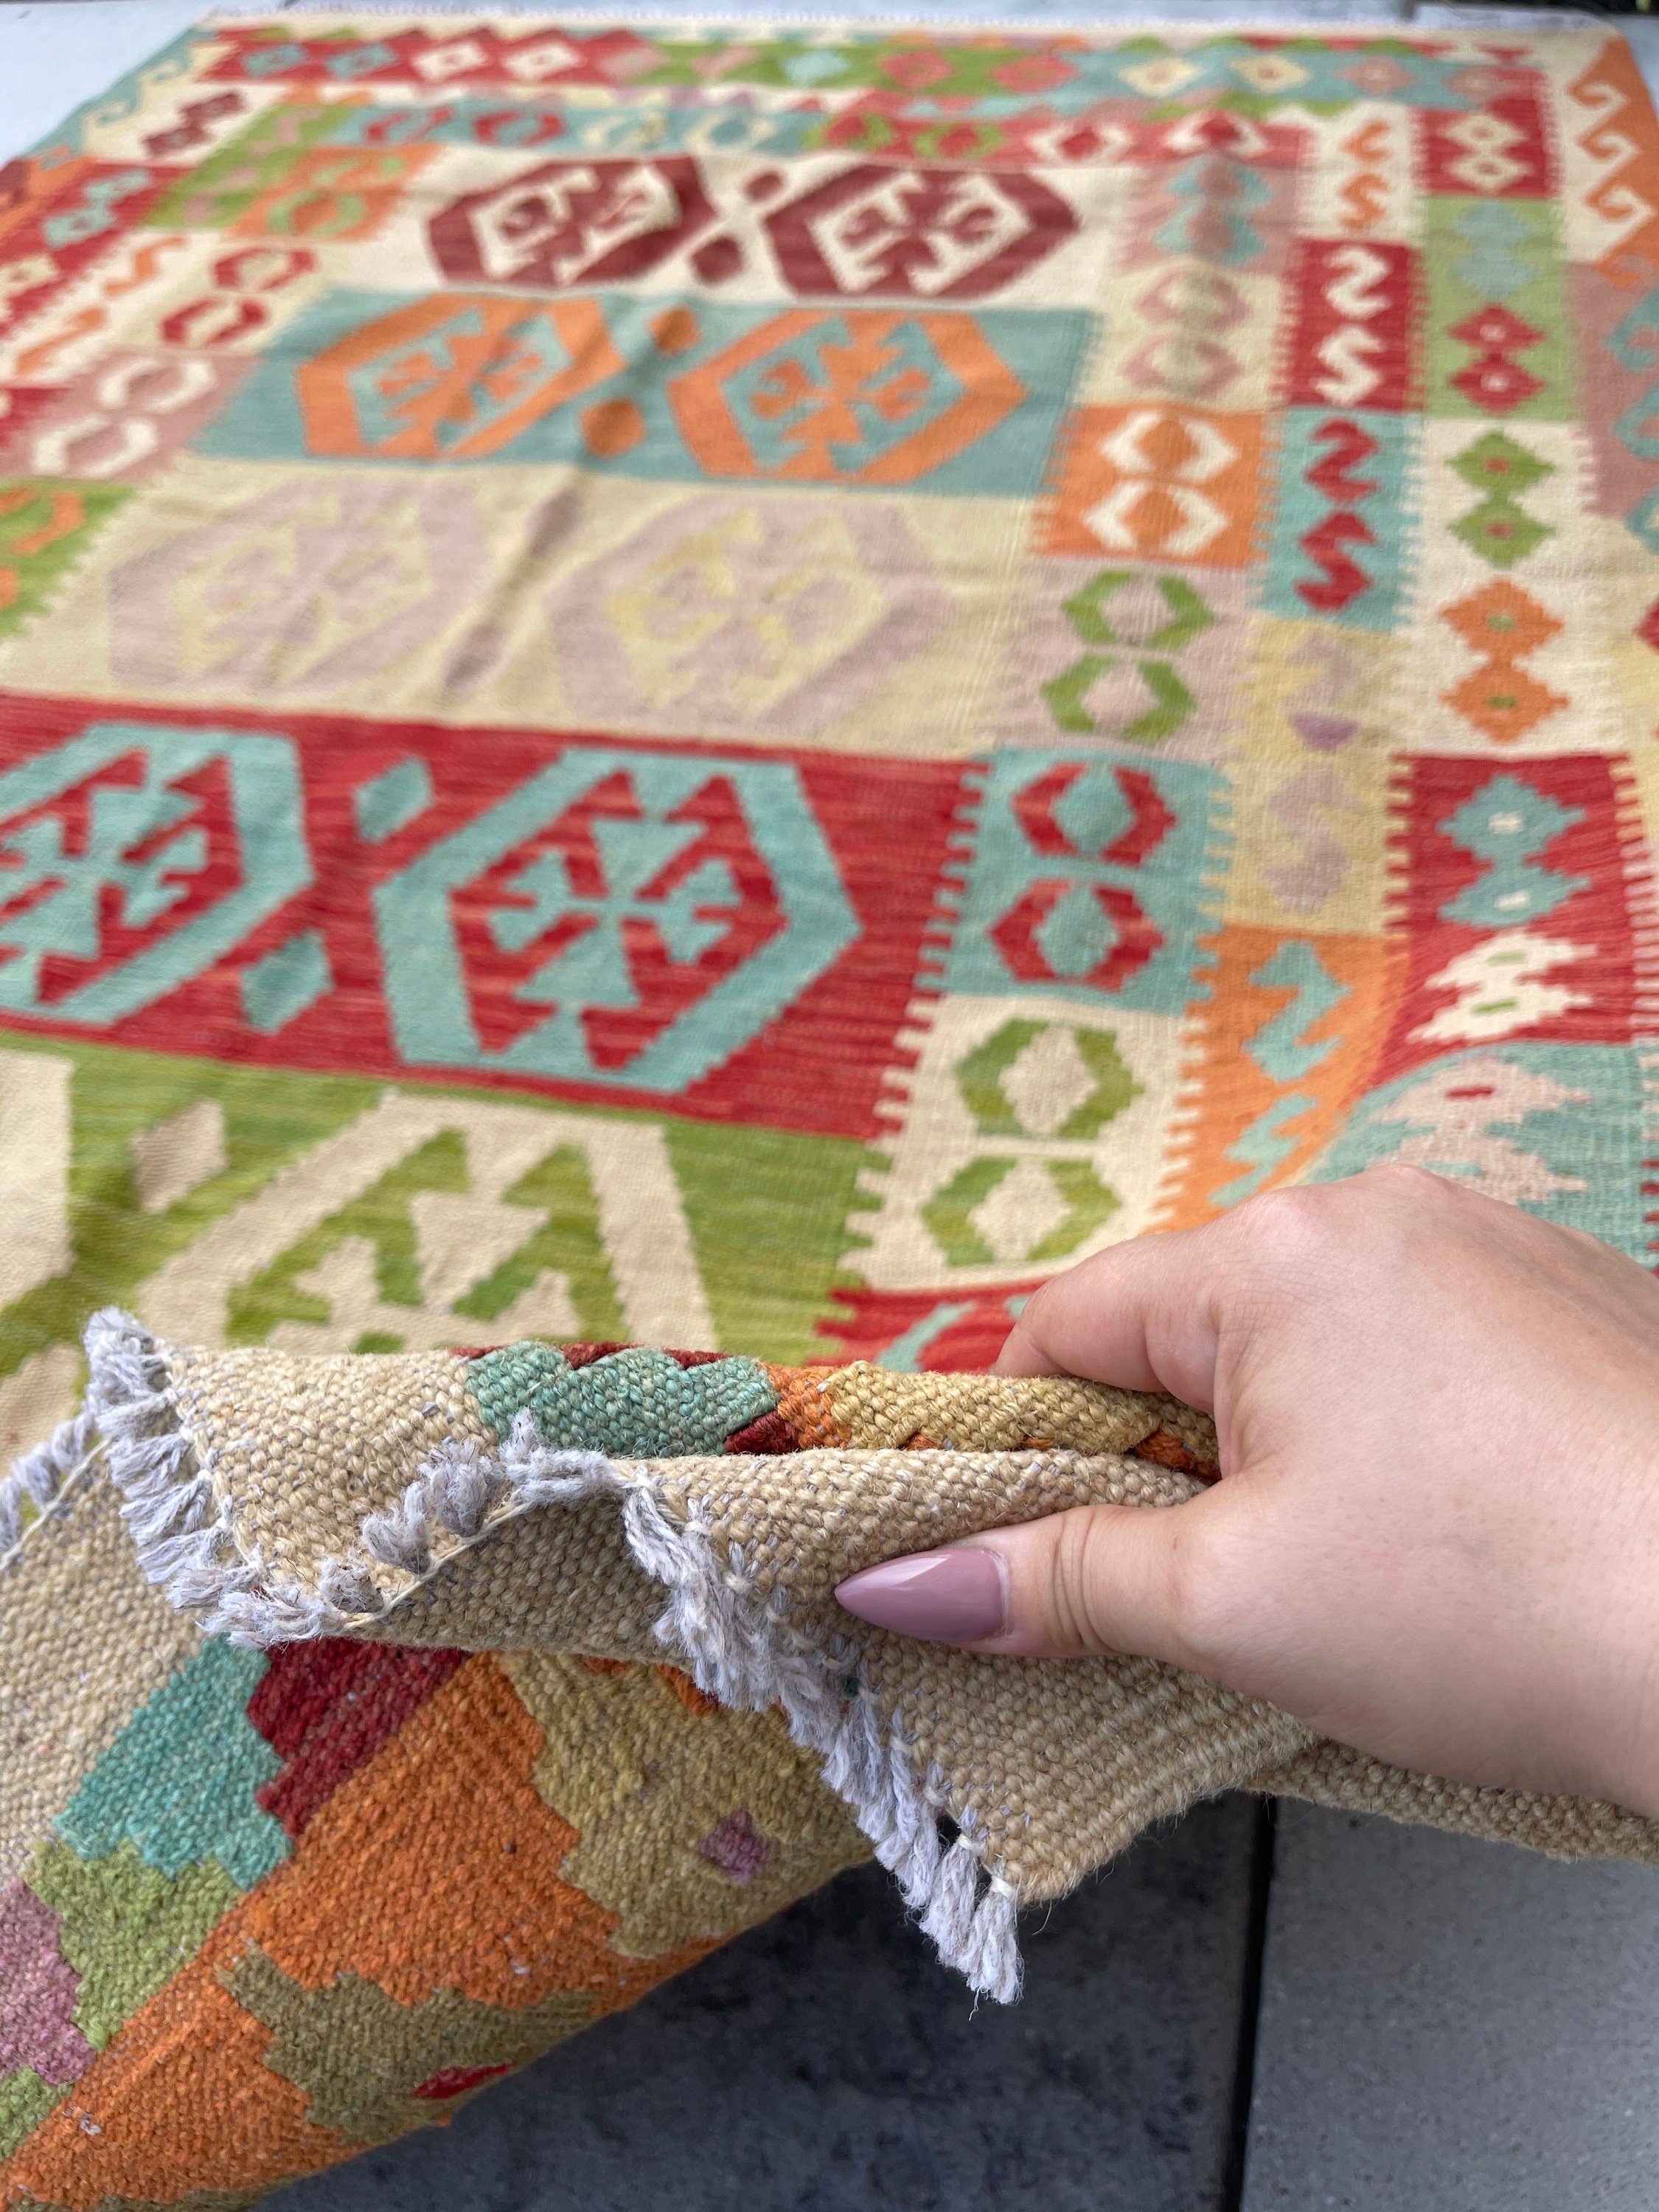 5x7 (150x215) Handmade Afghan Kilim Rug | Beige Orange Green Sky Blue Pink | Flatweave Boho Tribal Turkish Moroccan Oriental Wool Outdoor